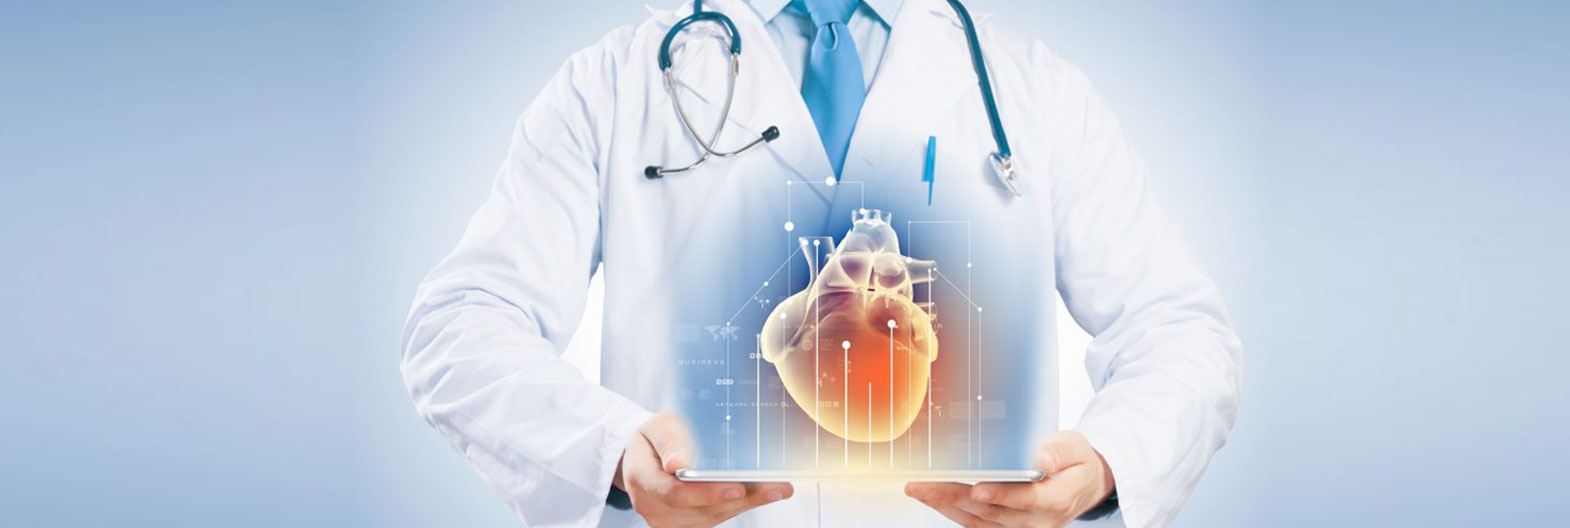 hipertenzijos kurso gydymas kaip amžinai išgydyti hipertenziją forumas